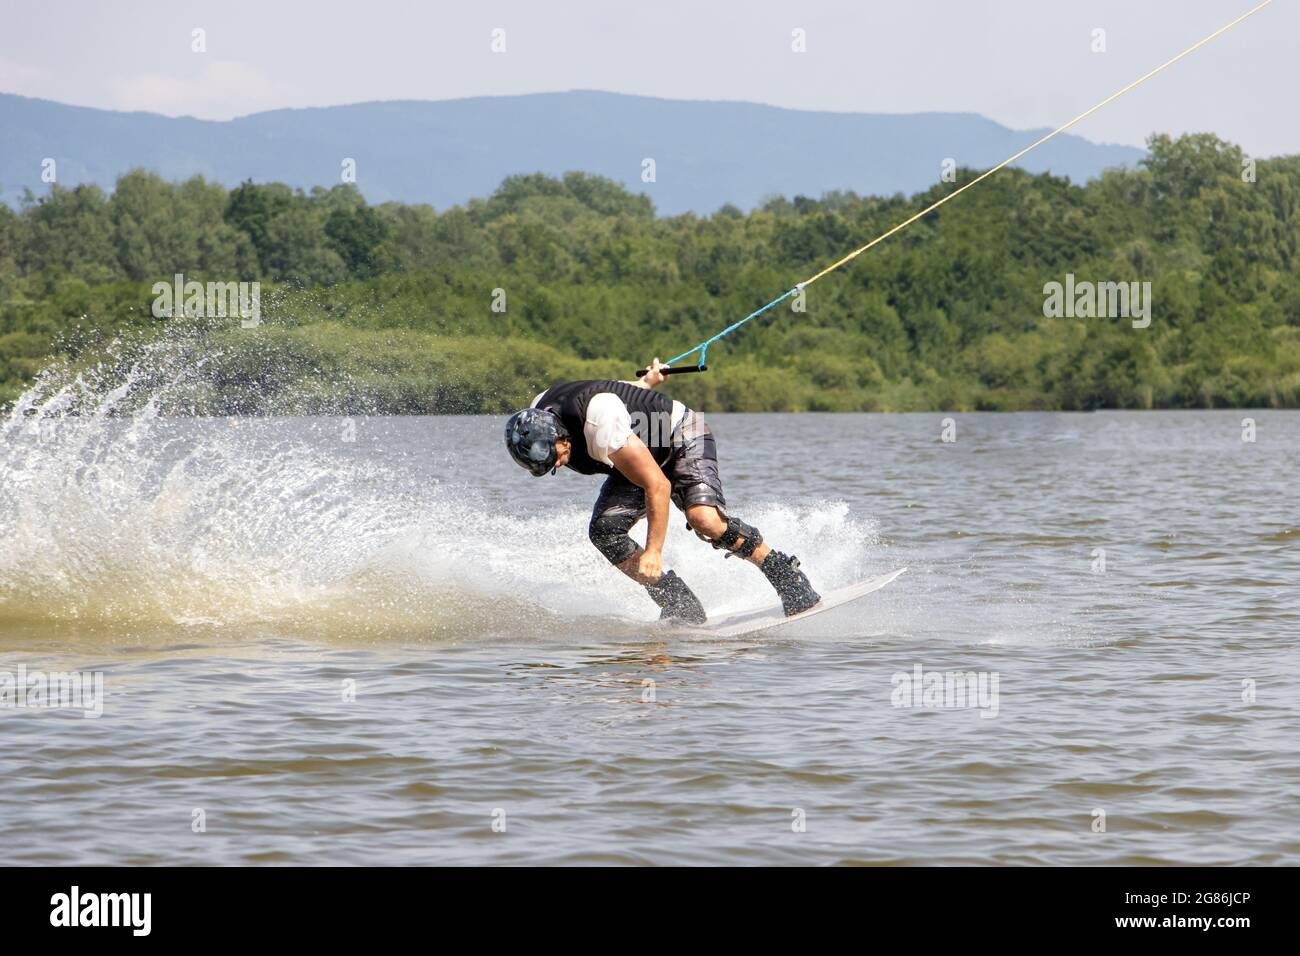 Un uomo in barca da surf. Un surfista è tirato su un towage d'acqua sul lago. Foto Stock